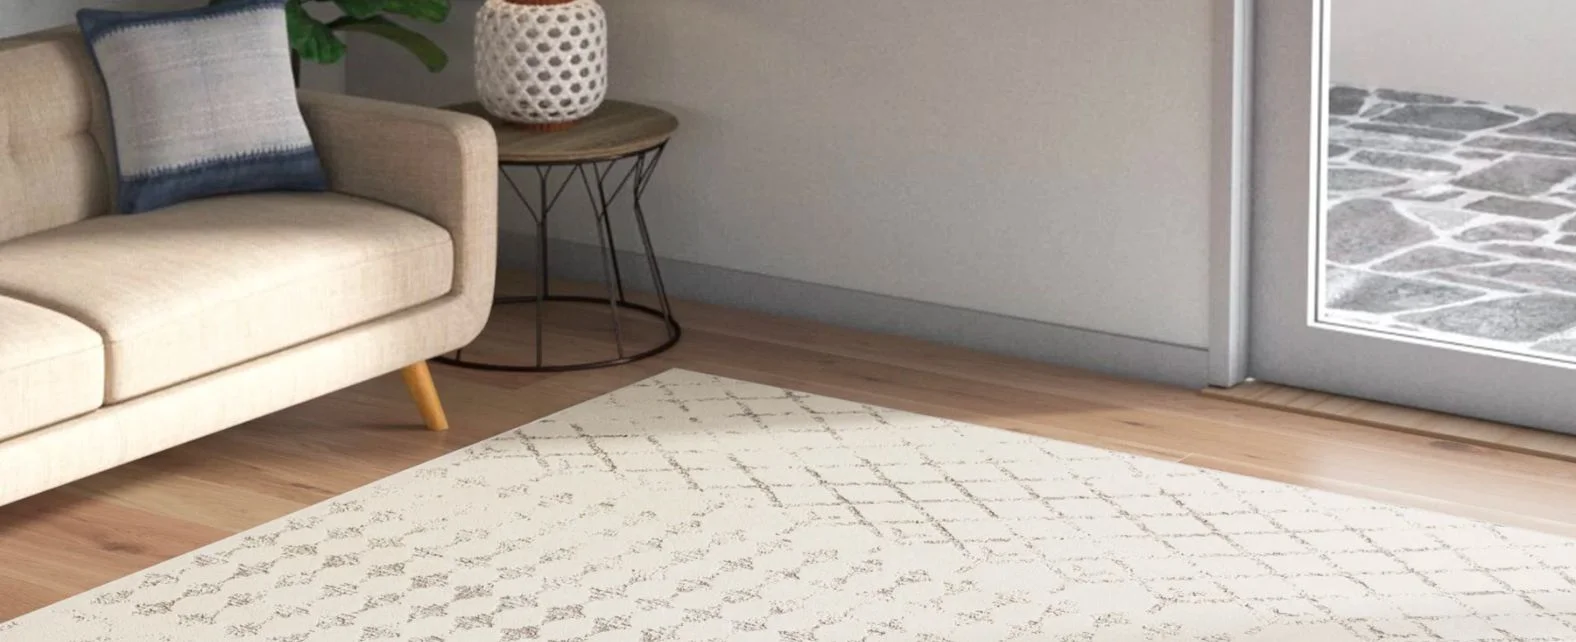 Grand tapis blanc rectangulaire dans un salon minimaliste